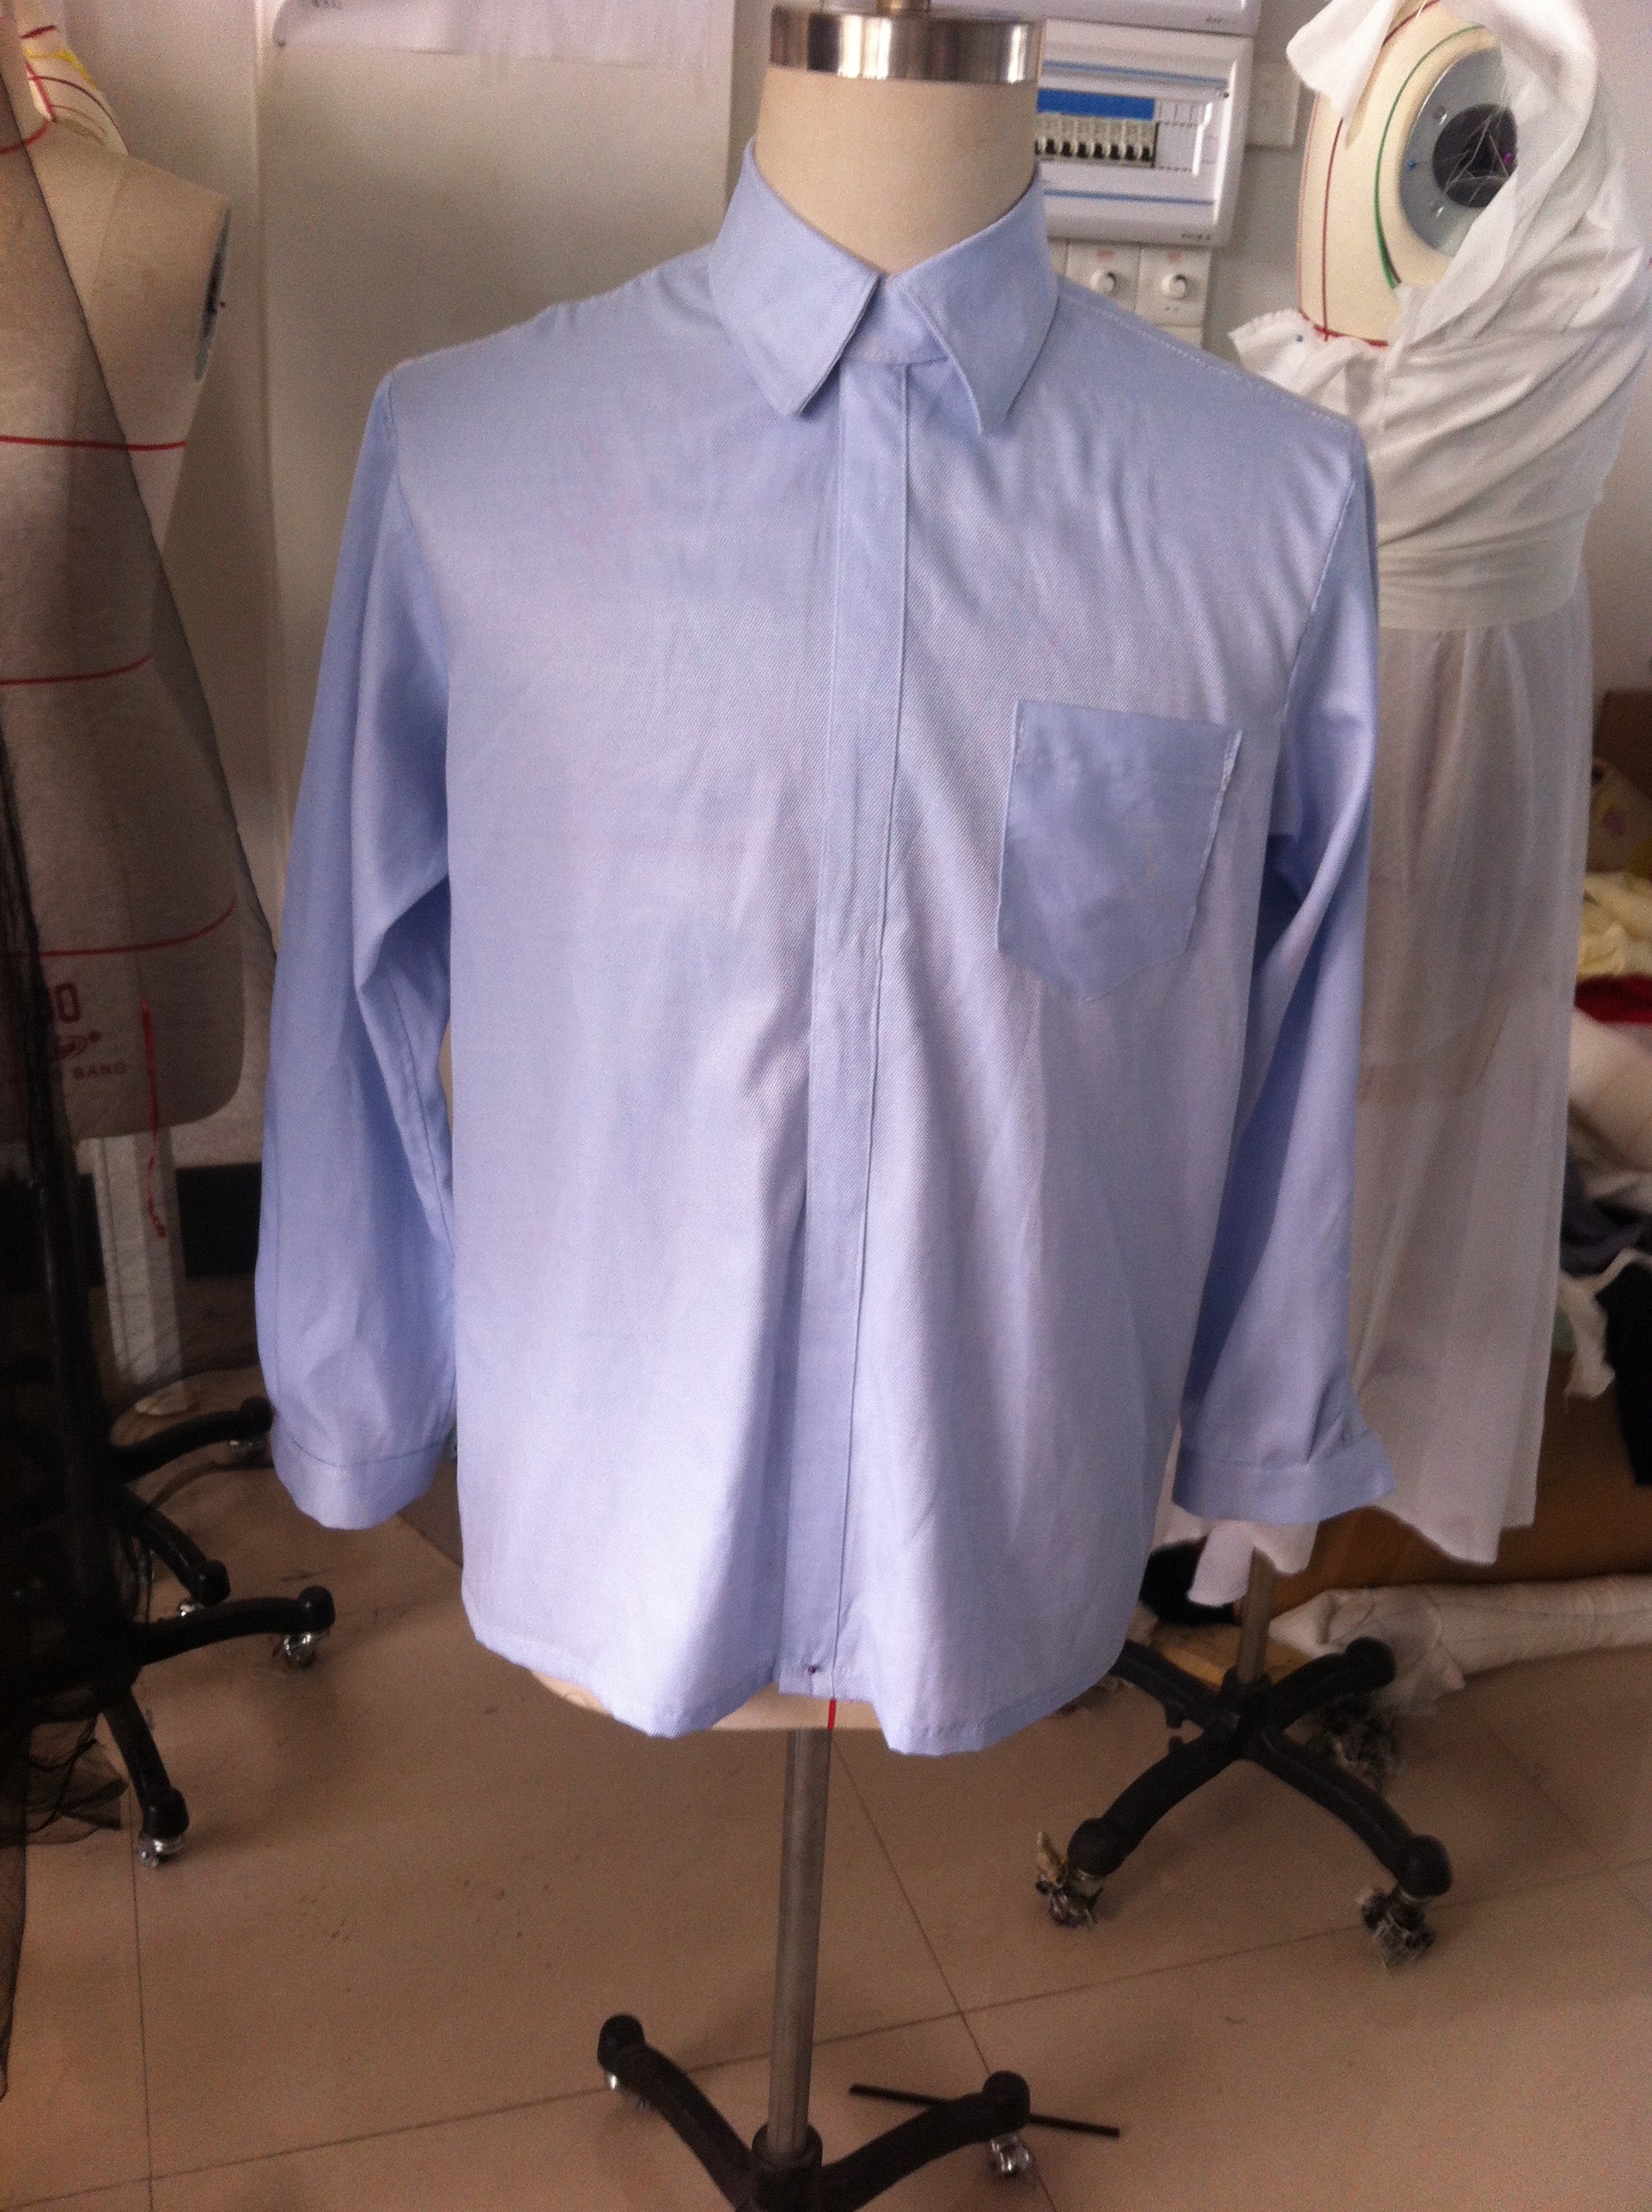 经典男士白衬衫素材图-欧莱凯设计网